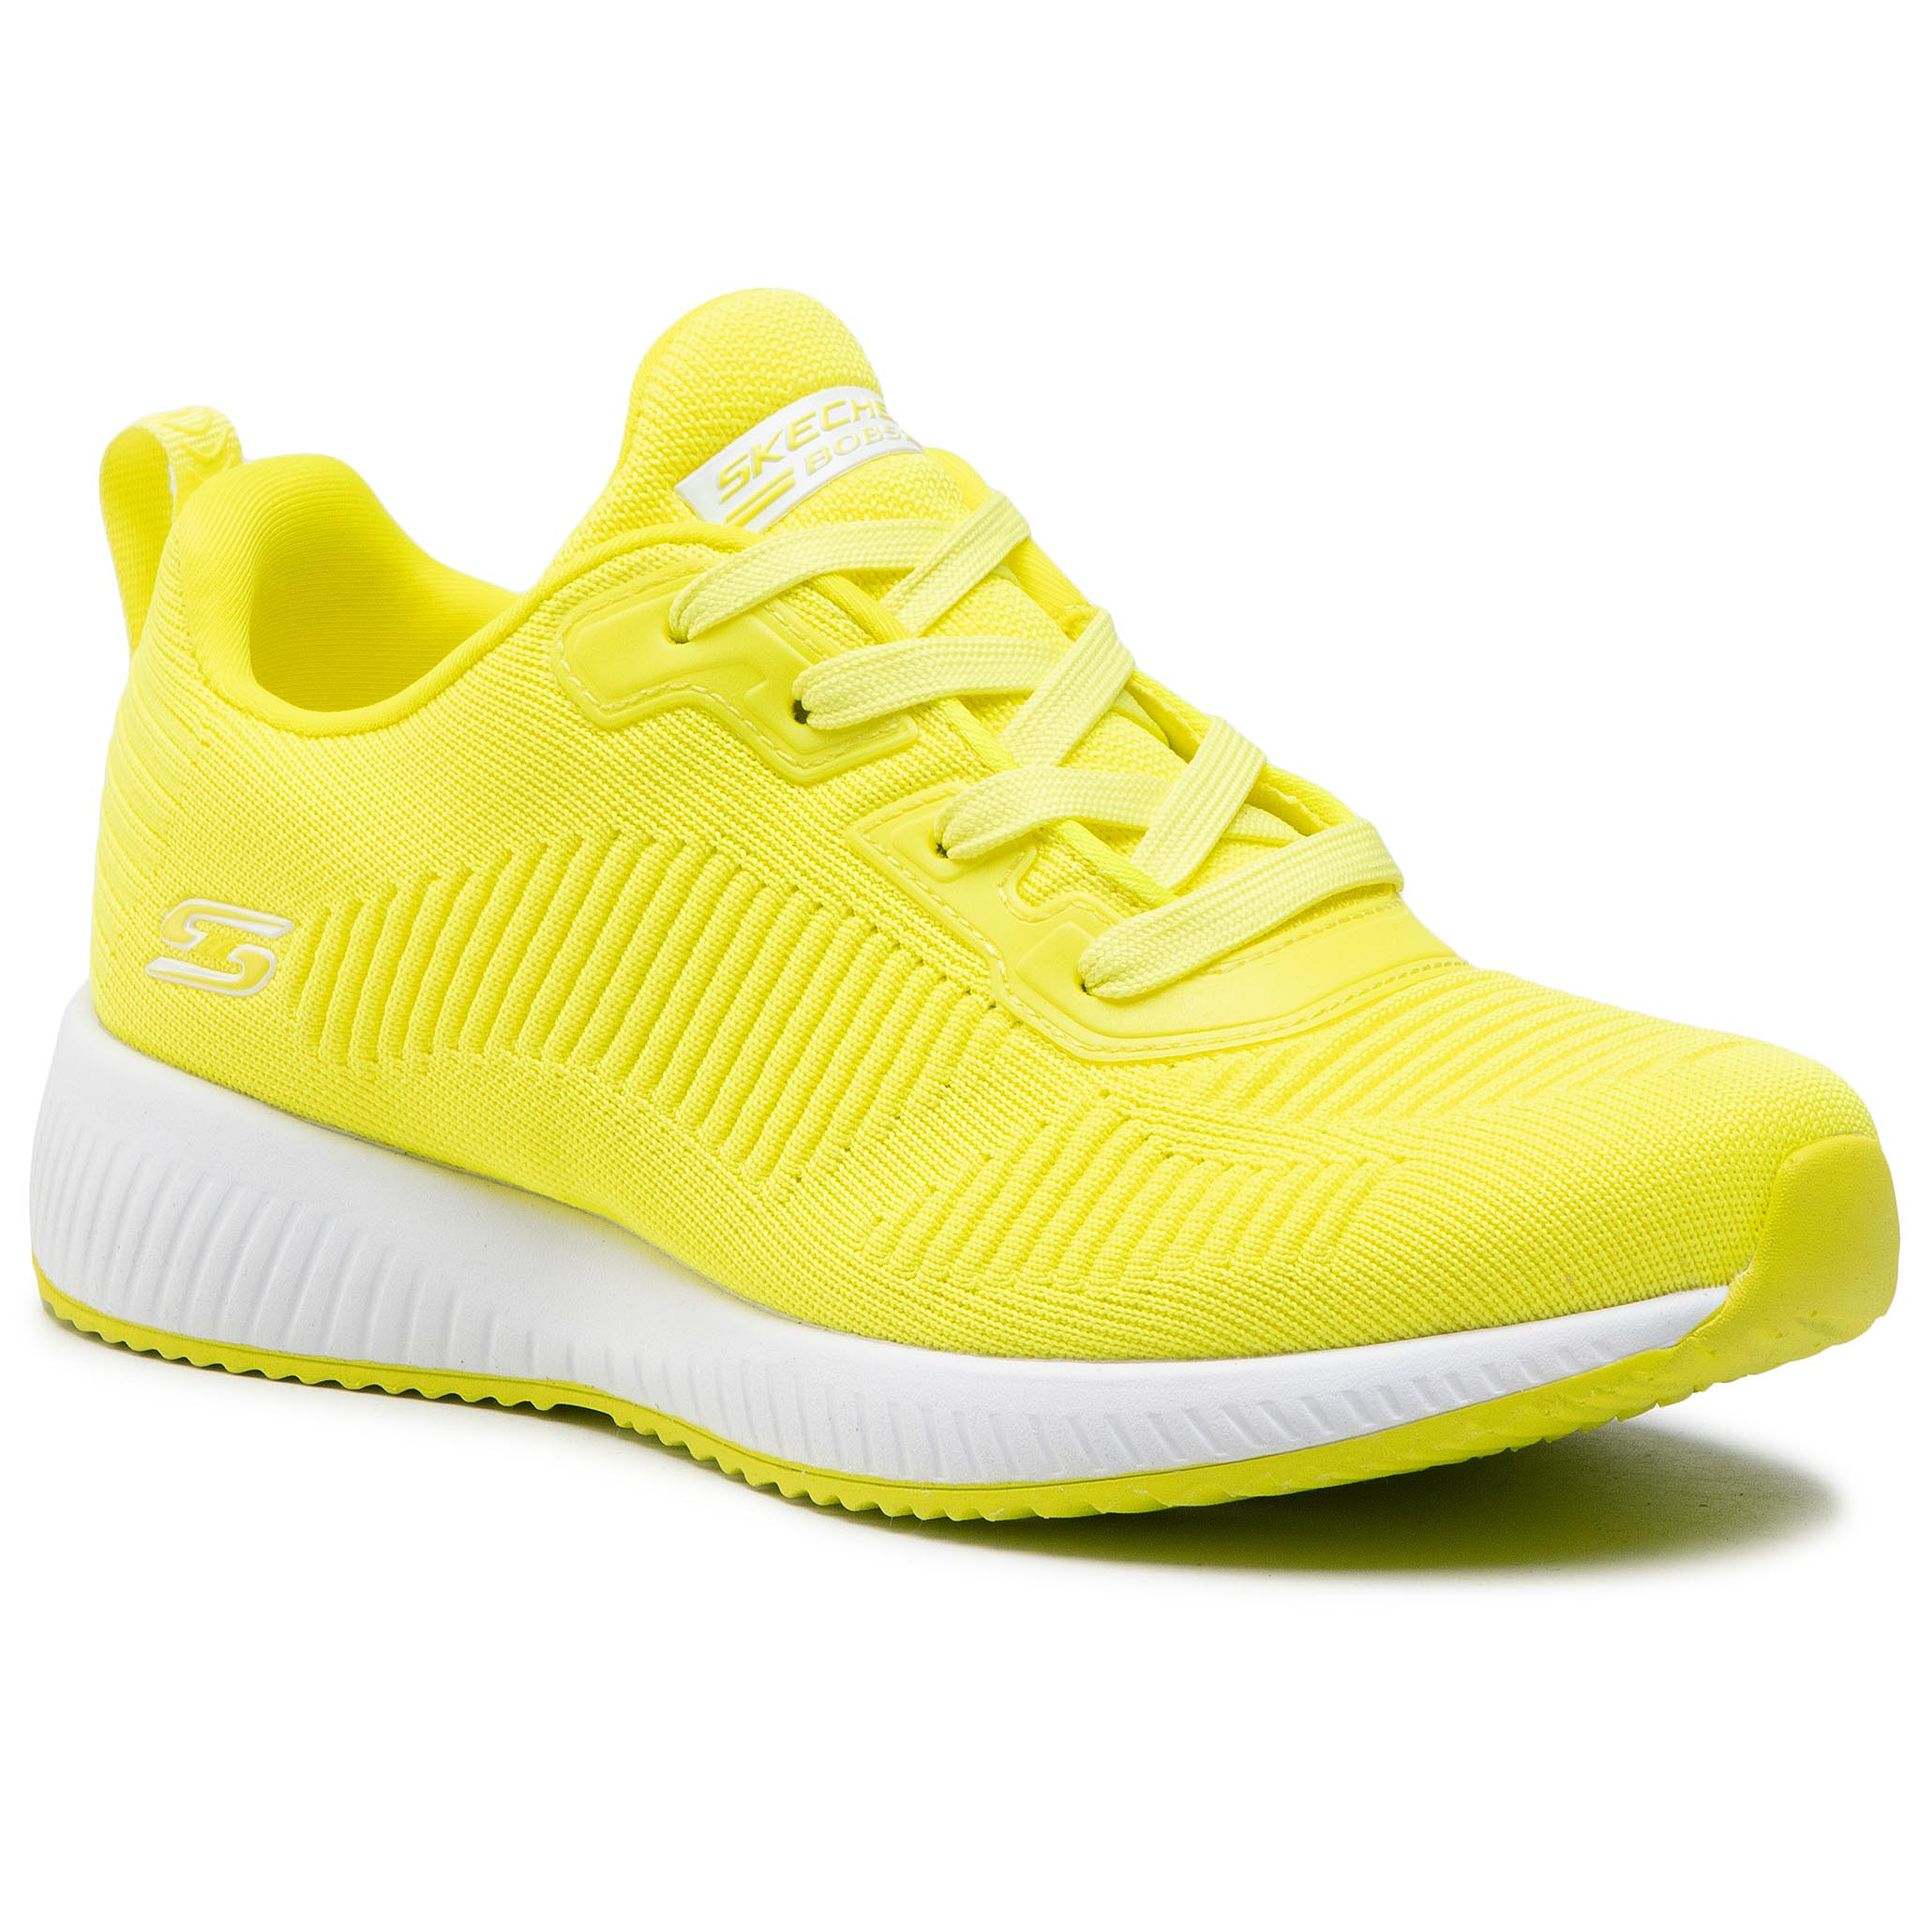 Skechers Buty Glowrider 33162/NYEL Neon/Yellow